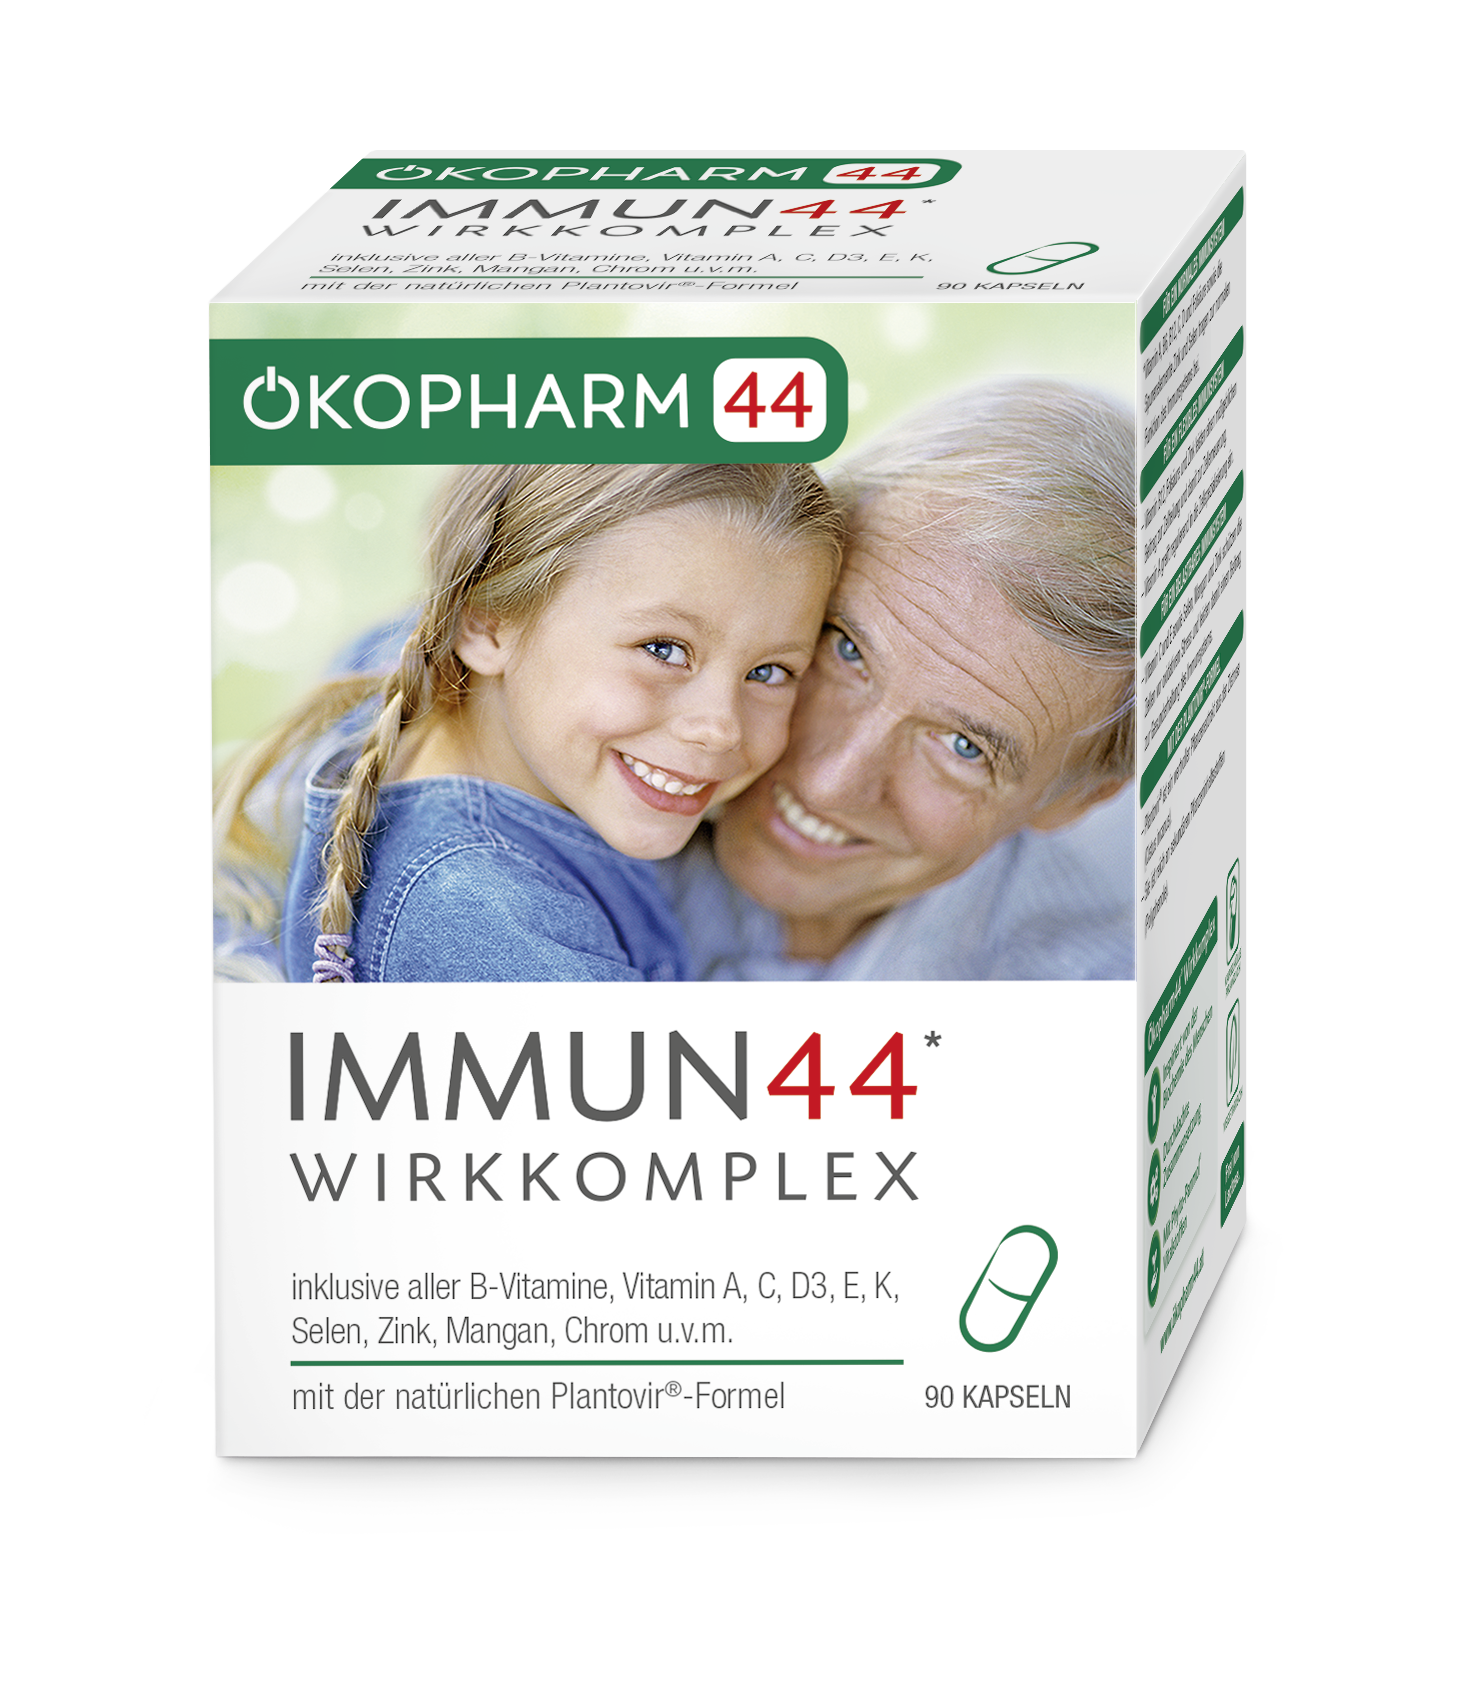 Ökopharm44® Immun44® Wirkkomplex Kapseln 90ST